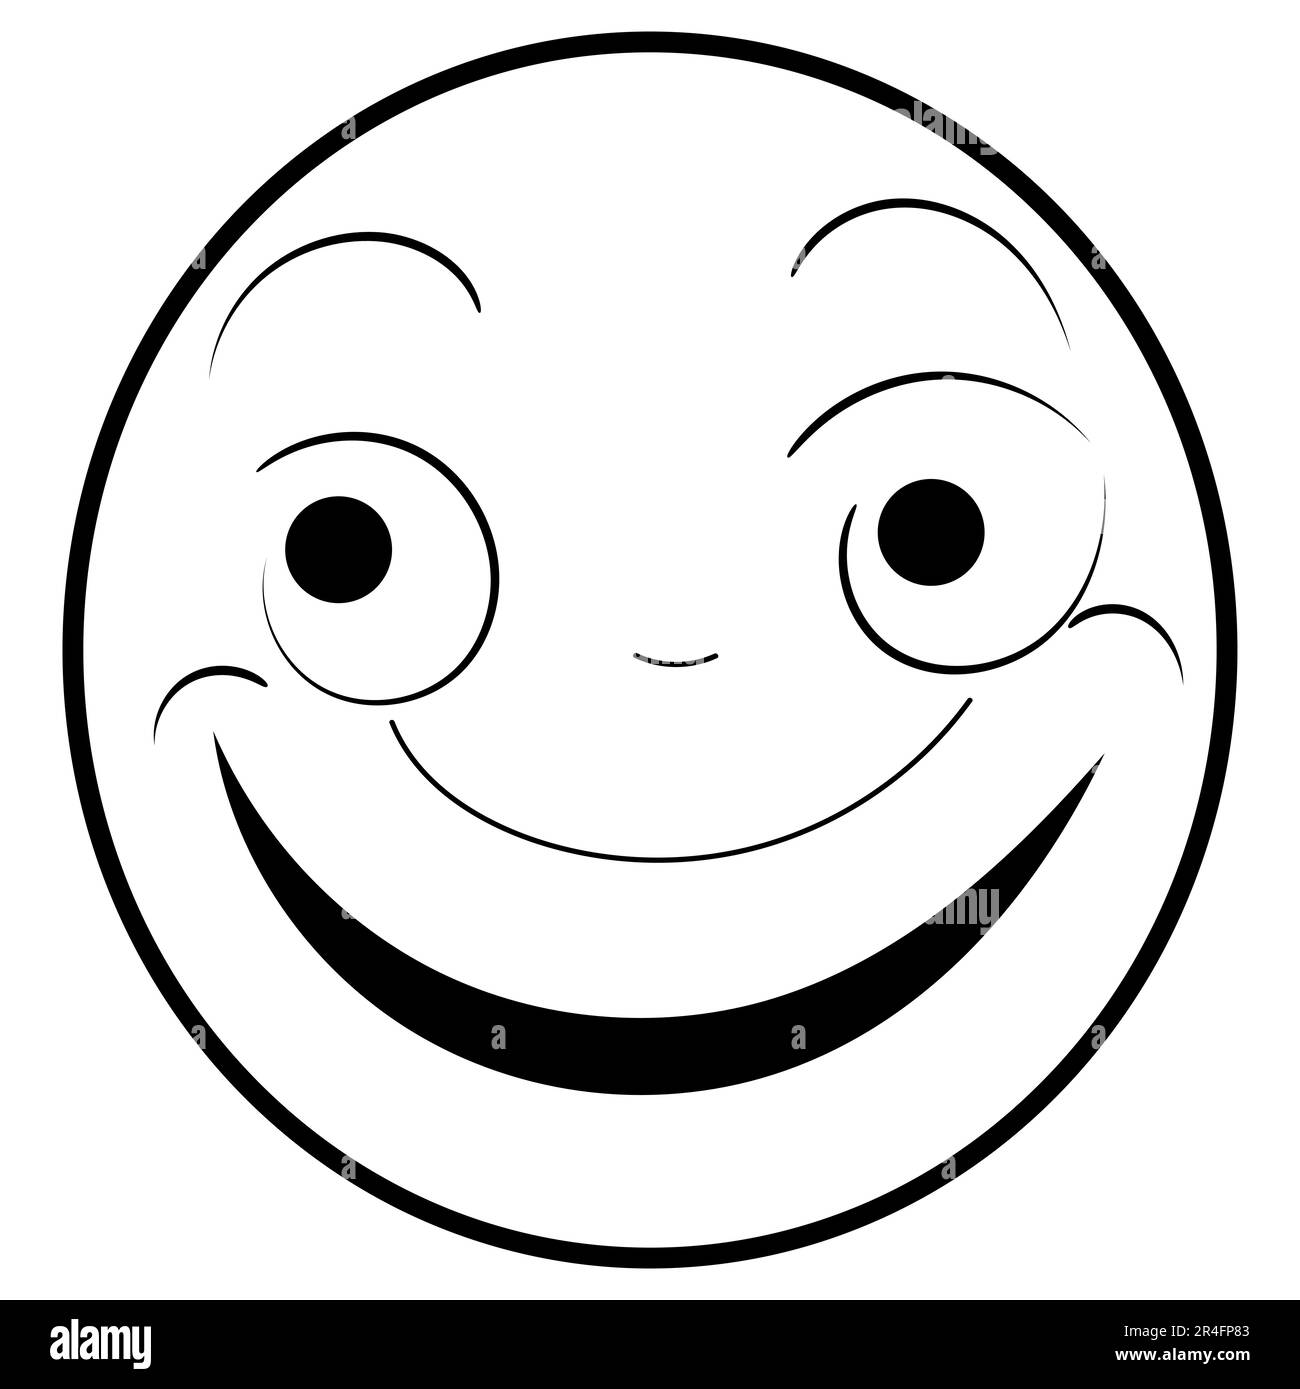 un conjunto de iconos de garabatos emoji que representan varias emociones y estados de ánimo, como la felicidad, la tristeza, la sonrisa y el humor, en forma de caras emoji Foto de stock